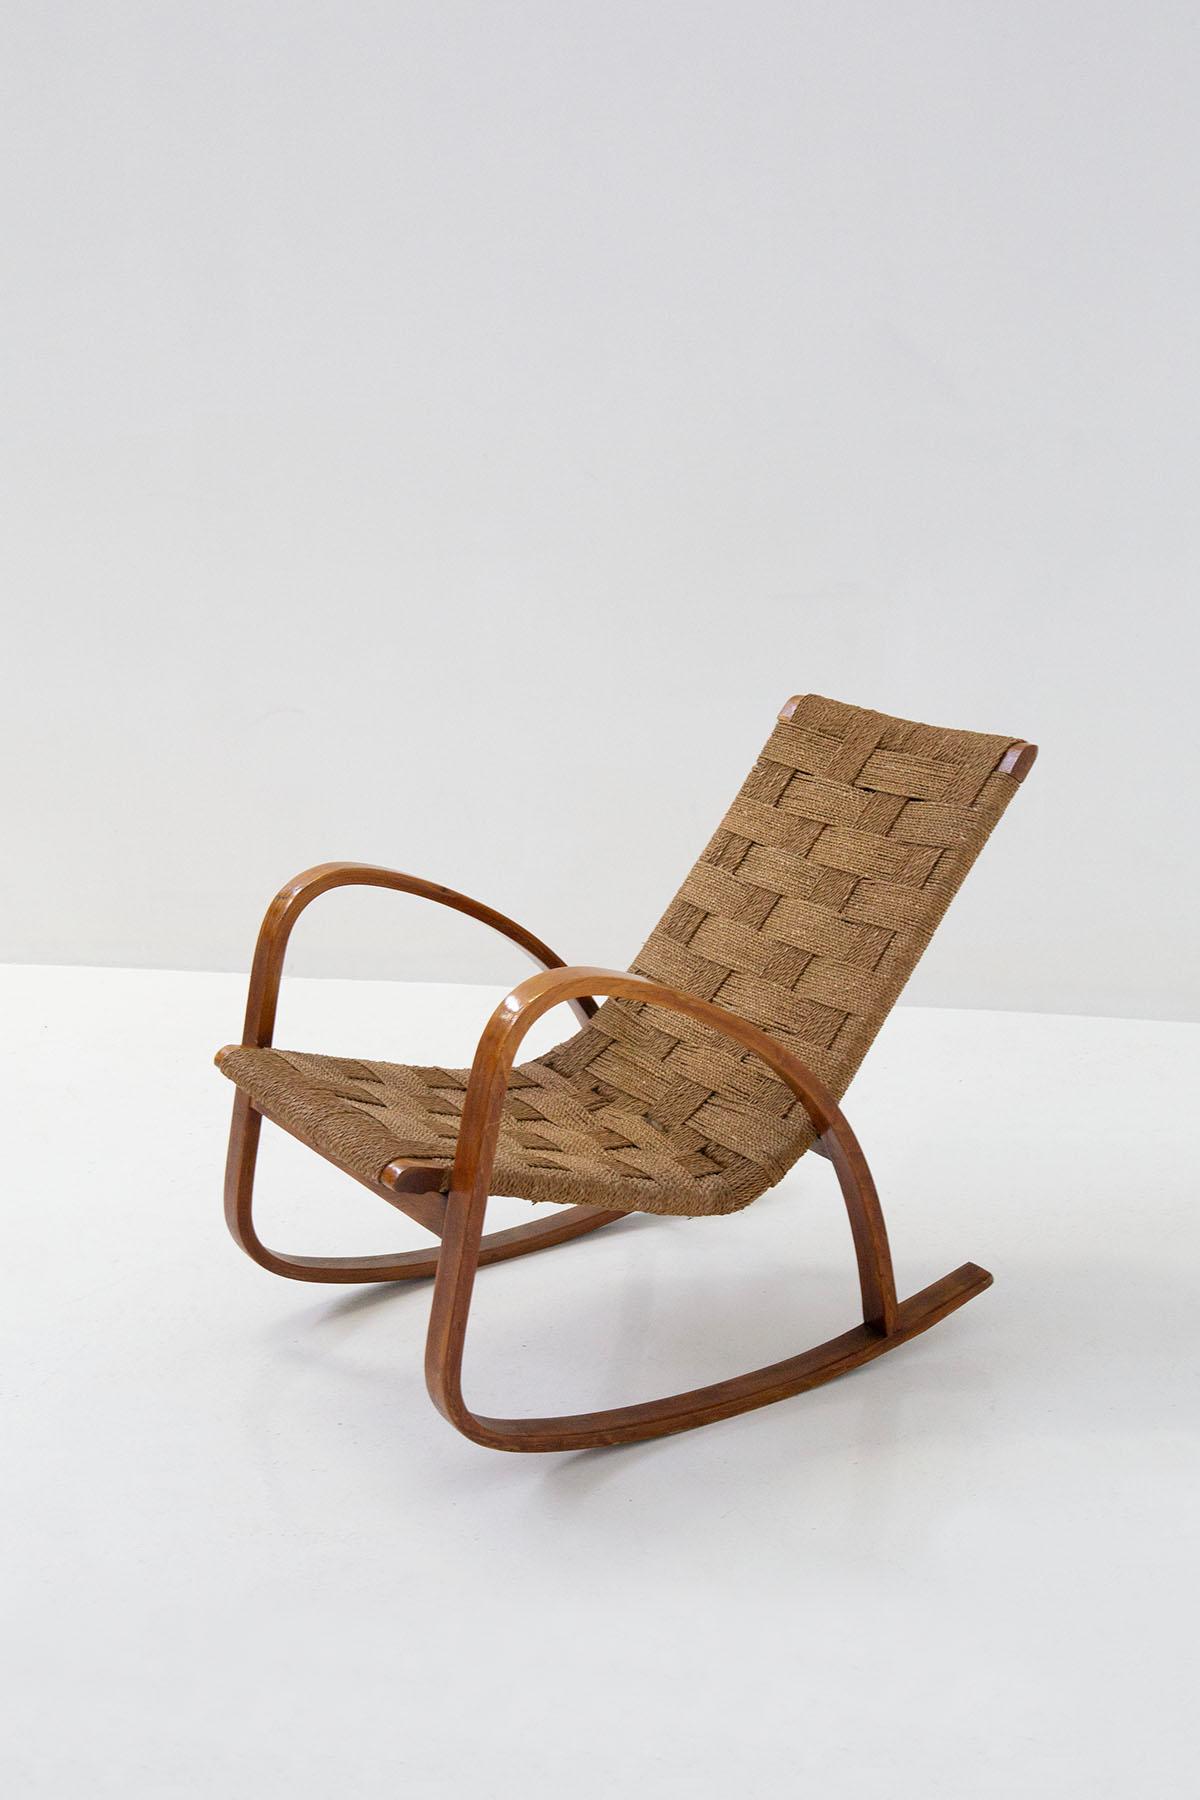 Seltener Schaukelstuhl aus der Zeit des italienischen Rationalismus der 1920er Jahre aus italienischer Produktion. Der Sessel ist in der europäischen Bauhaus-Periode angesiedelt. Der Sessel ist gut konstruiert, seine Oberfläche ist aus Massivholz.